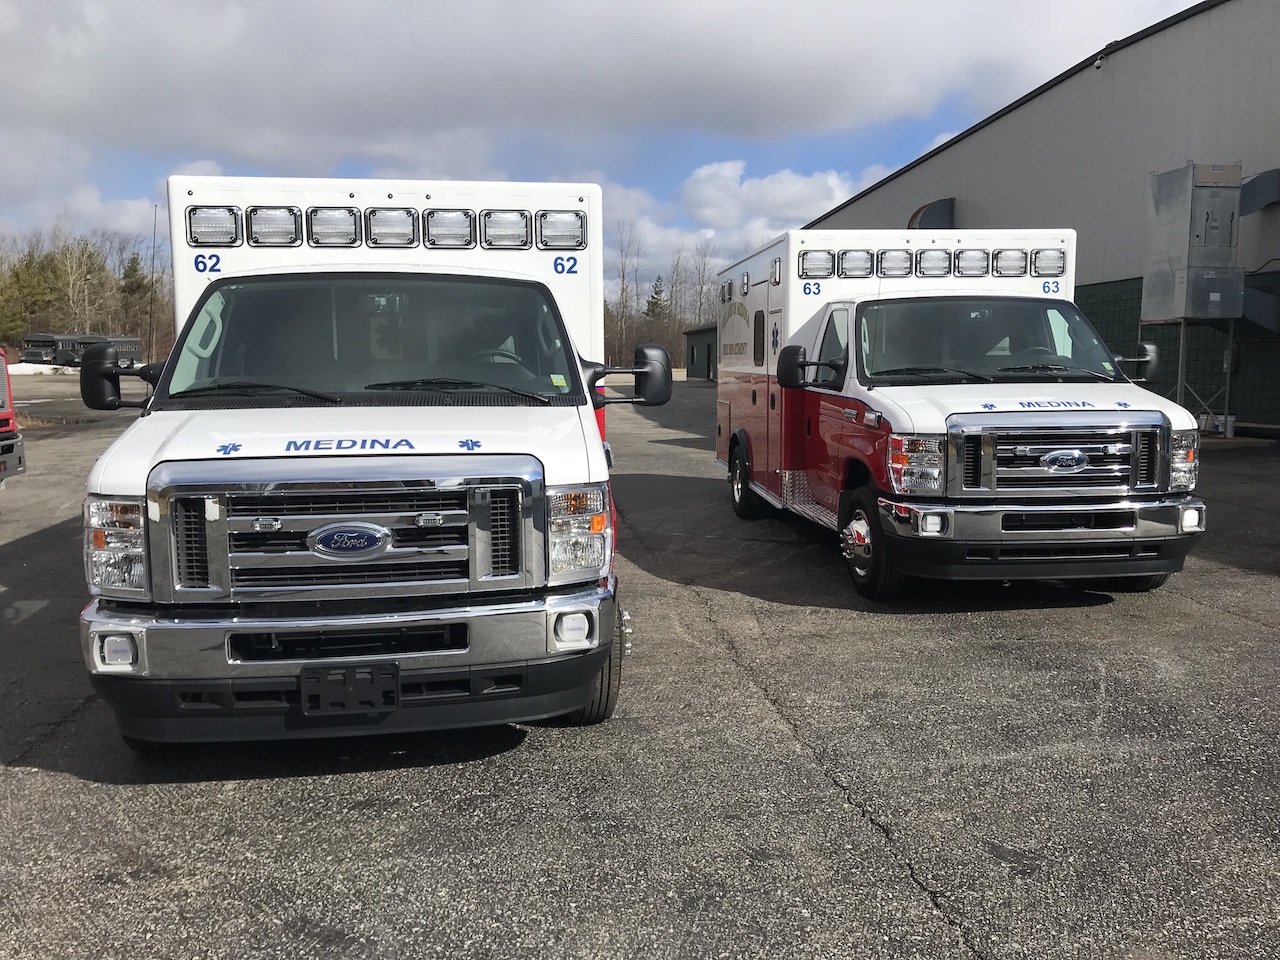 Medina-Medix-Ambulance-4